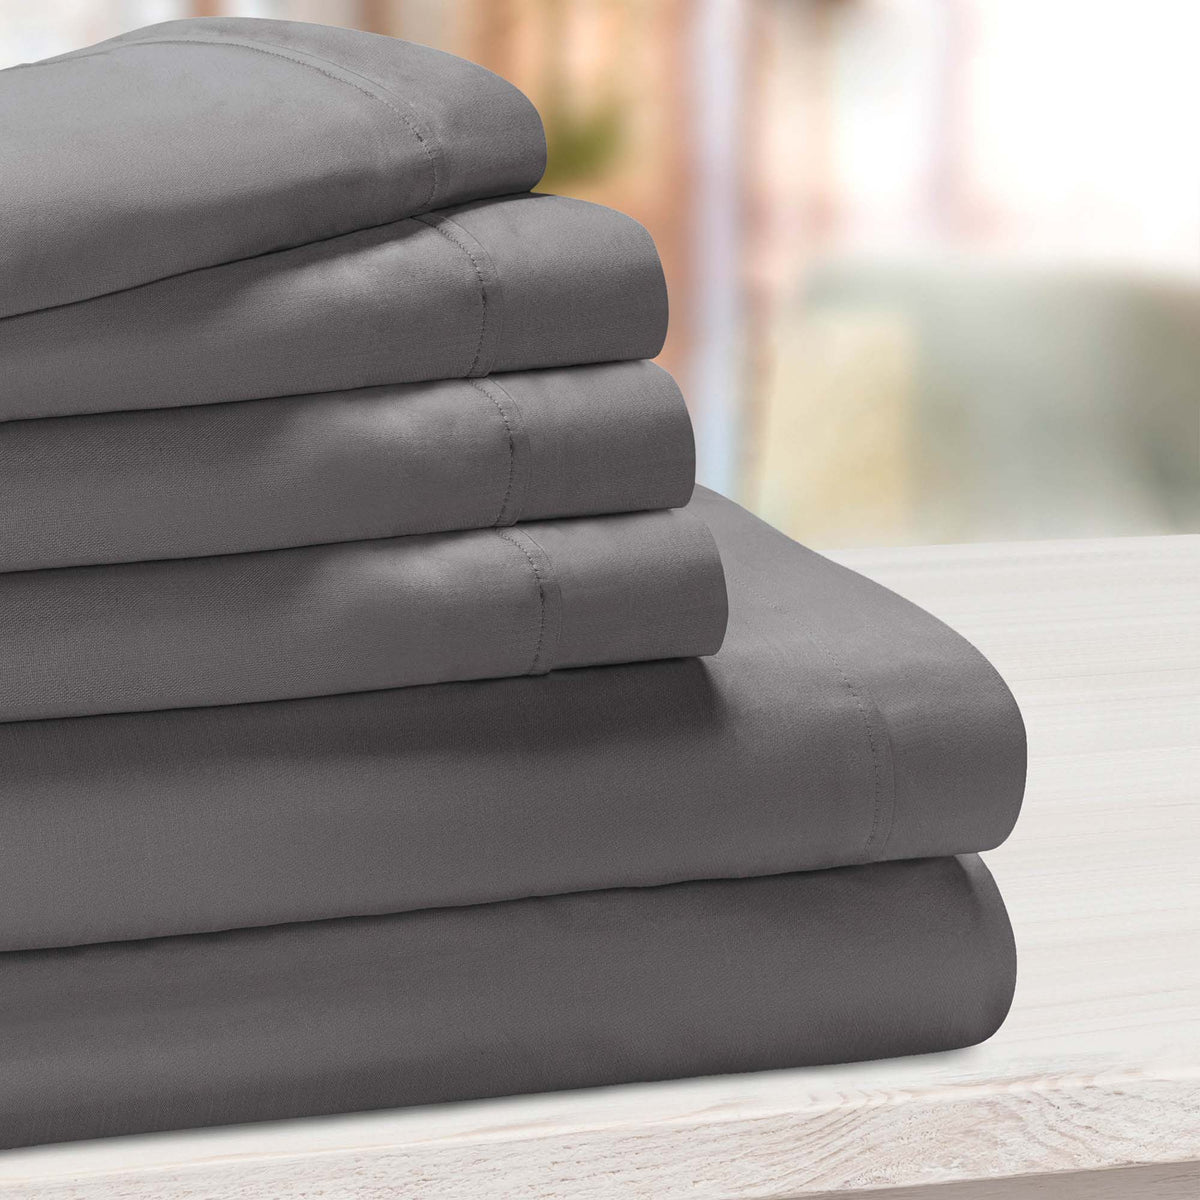 Superior Solid Deep Pocket Cotton Blend Bed Sheet Set